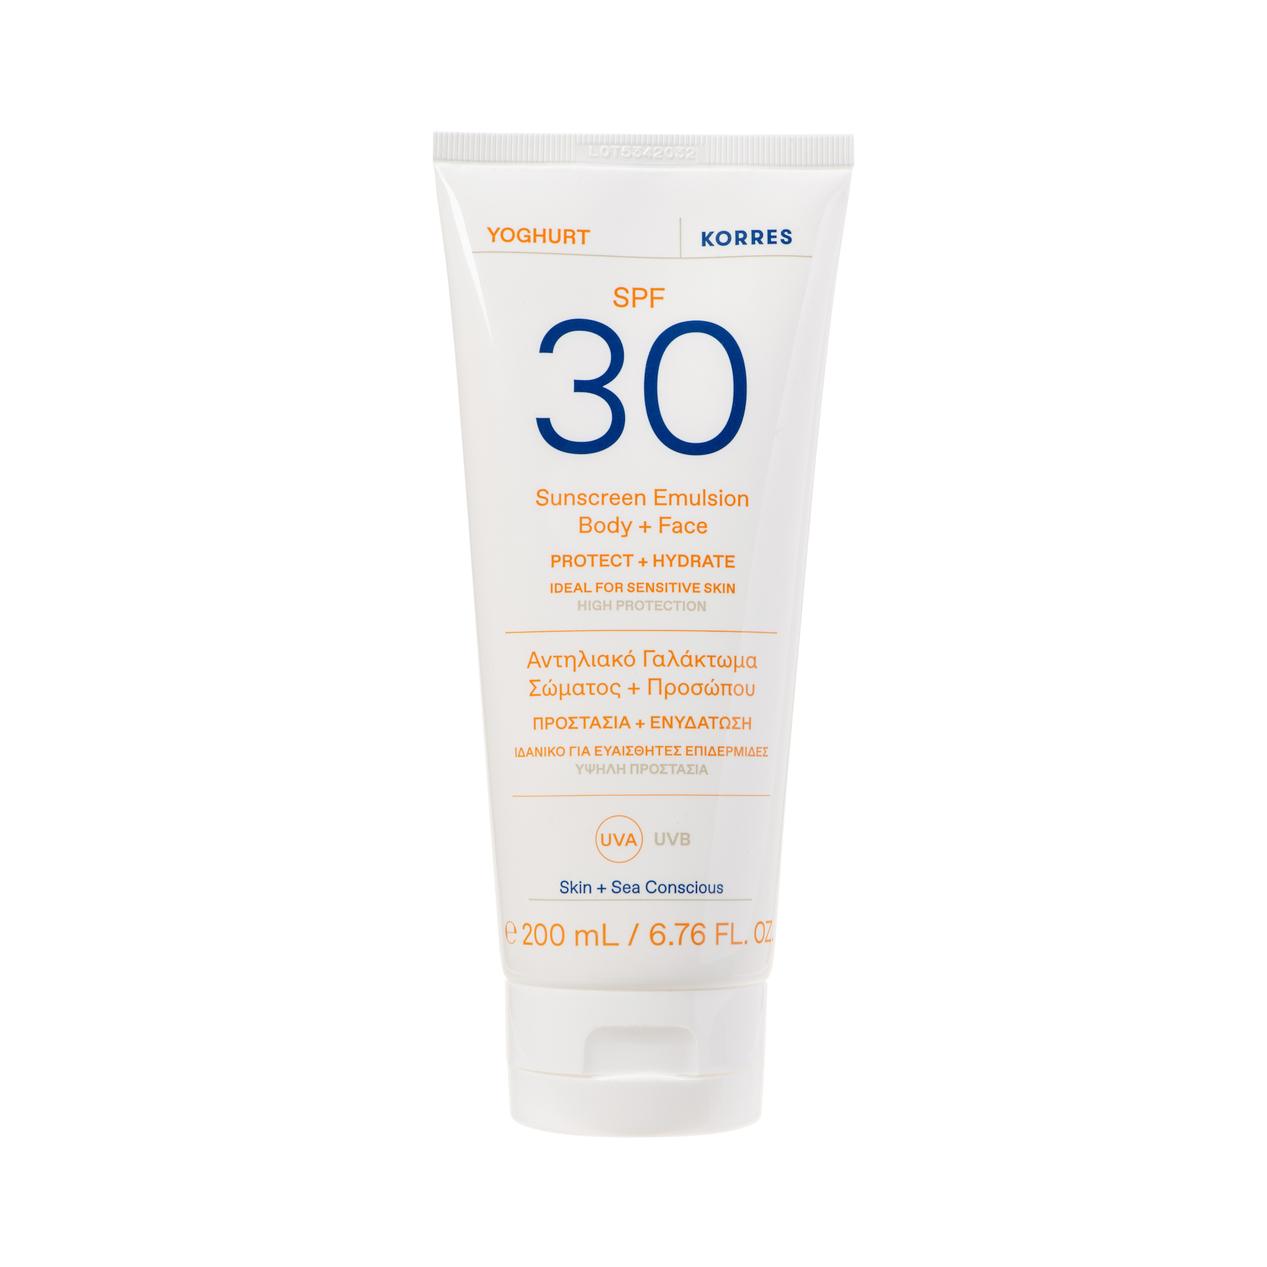 Tilbud: Korres Sun Yoghurt Sunscreen Emulsion Body + Face SPF30 200ml kr 379 på VITA